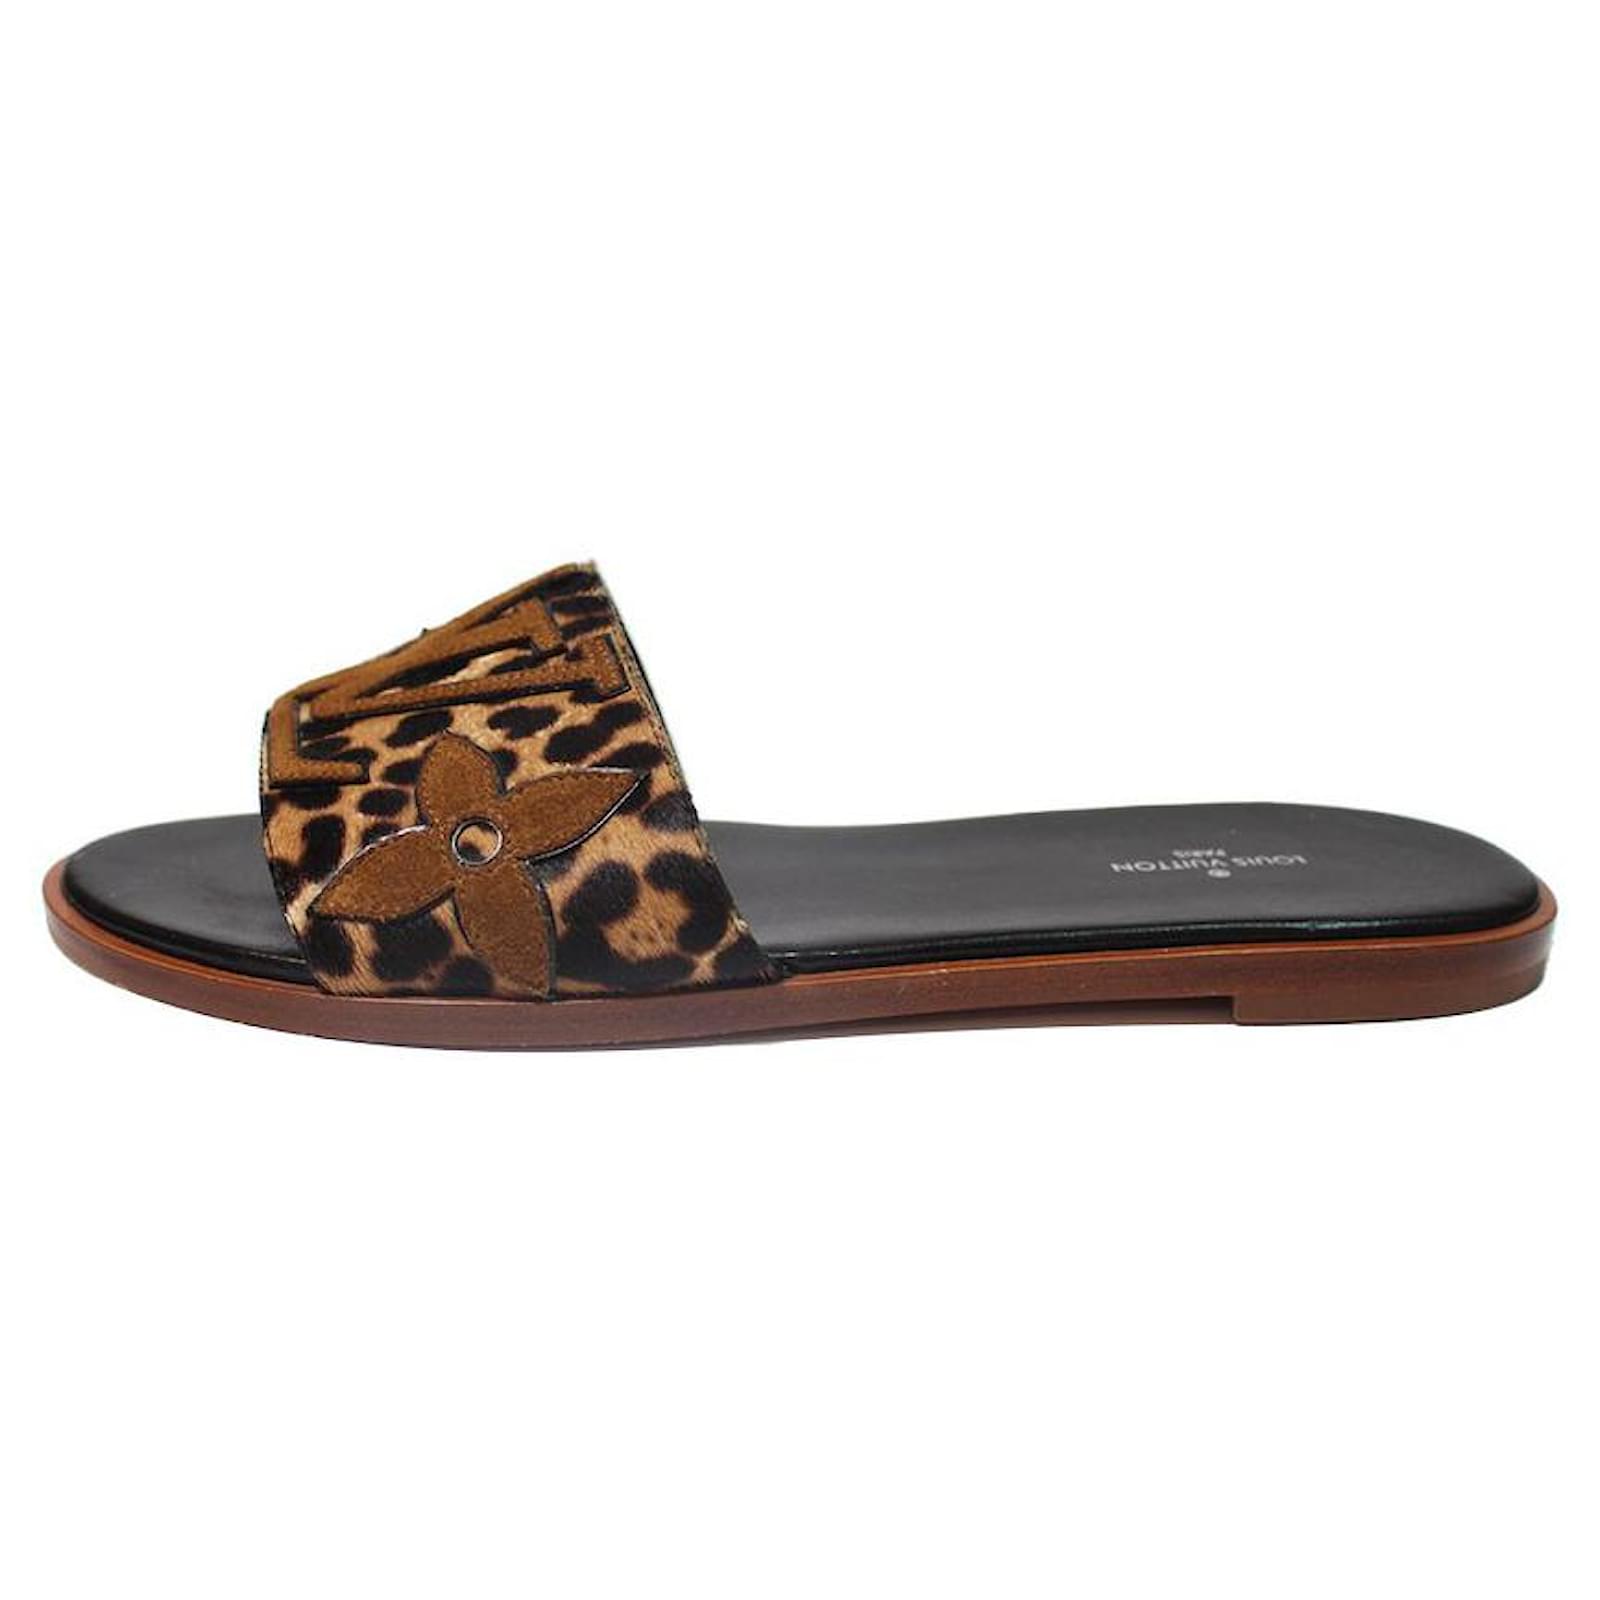 LOUIS VUITTON LOUIS VUITTON leopard mules shoes sandal leather